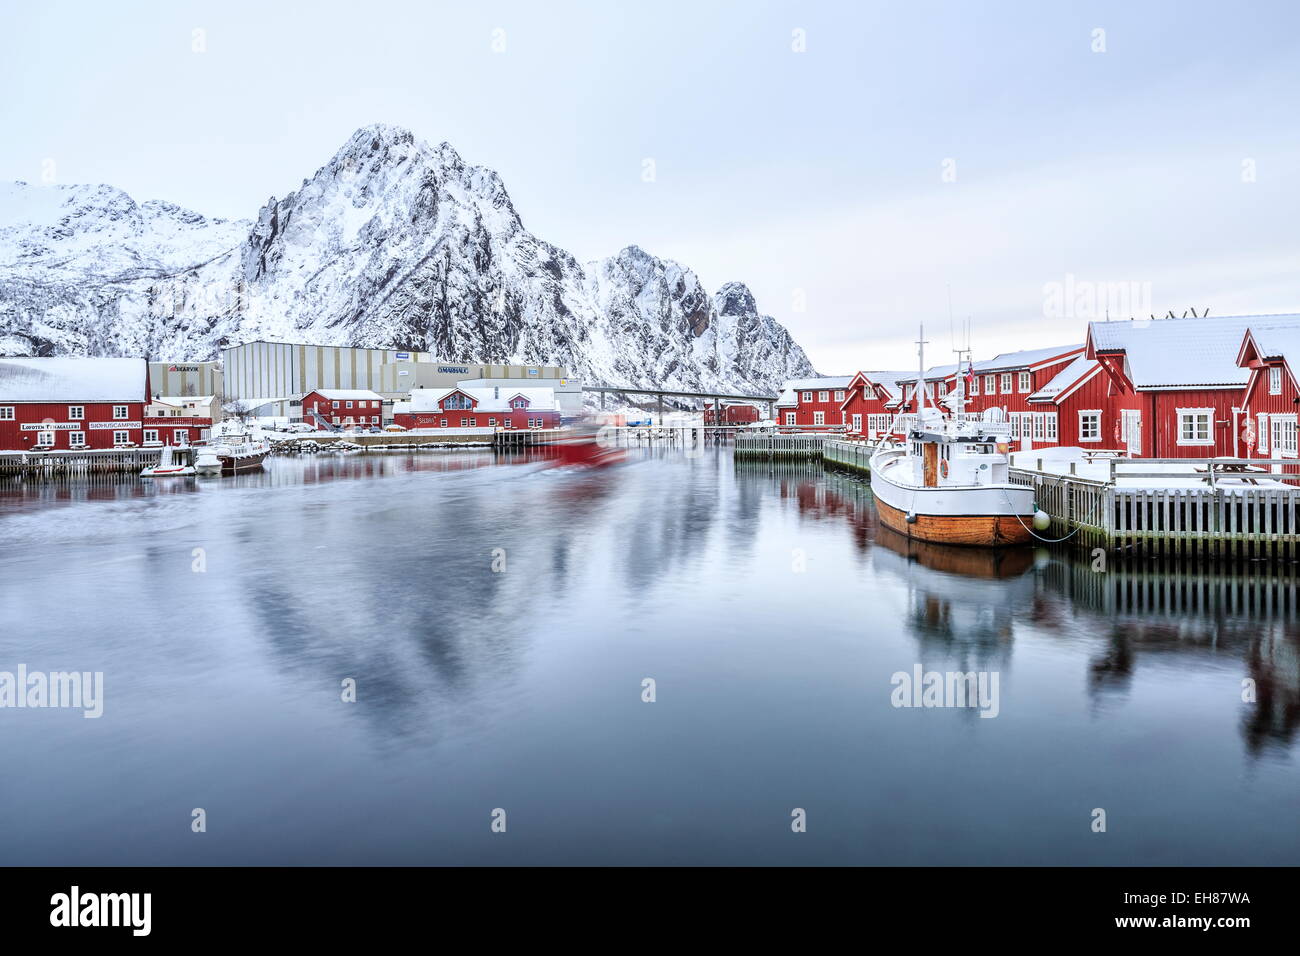 Port de Svolvaer avec ses maisons sur pilotis rouge foncé typiques de chaque port dans les îles Lofoten, Norvège, de l'Arctique Banque D'Images